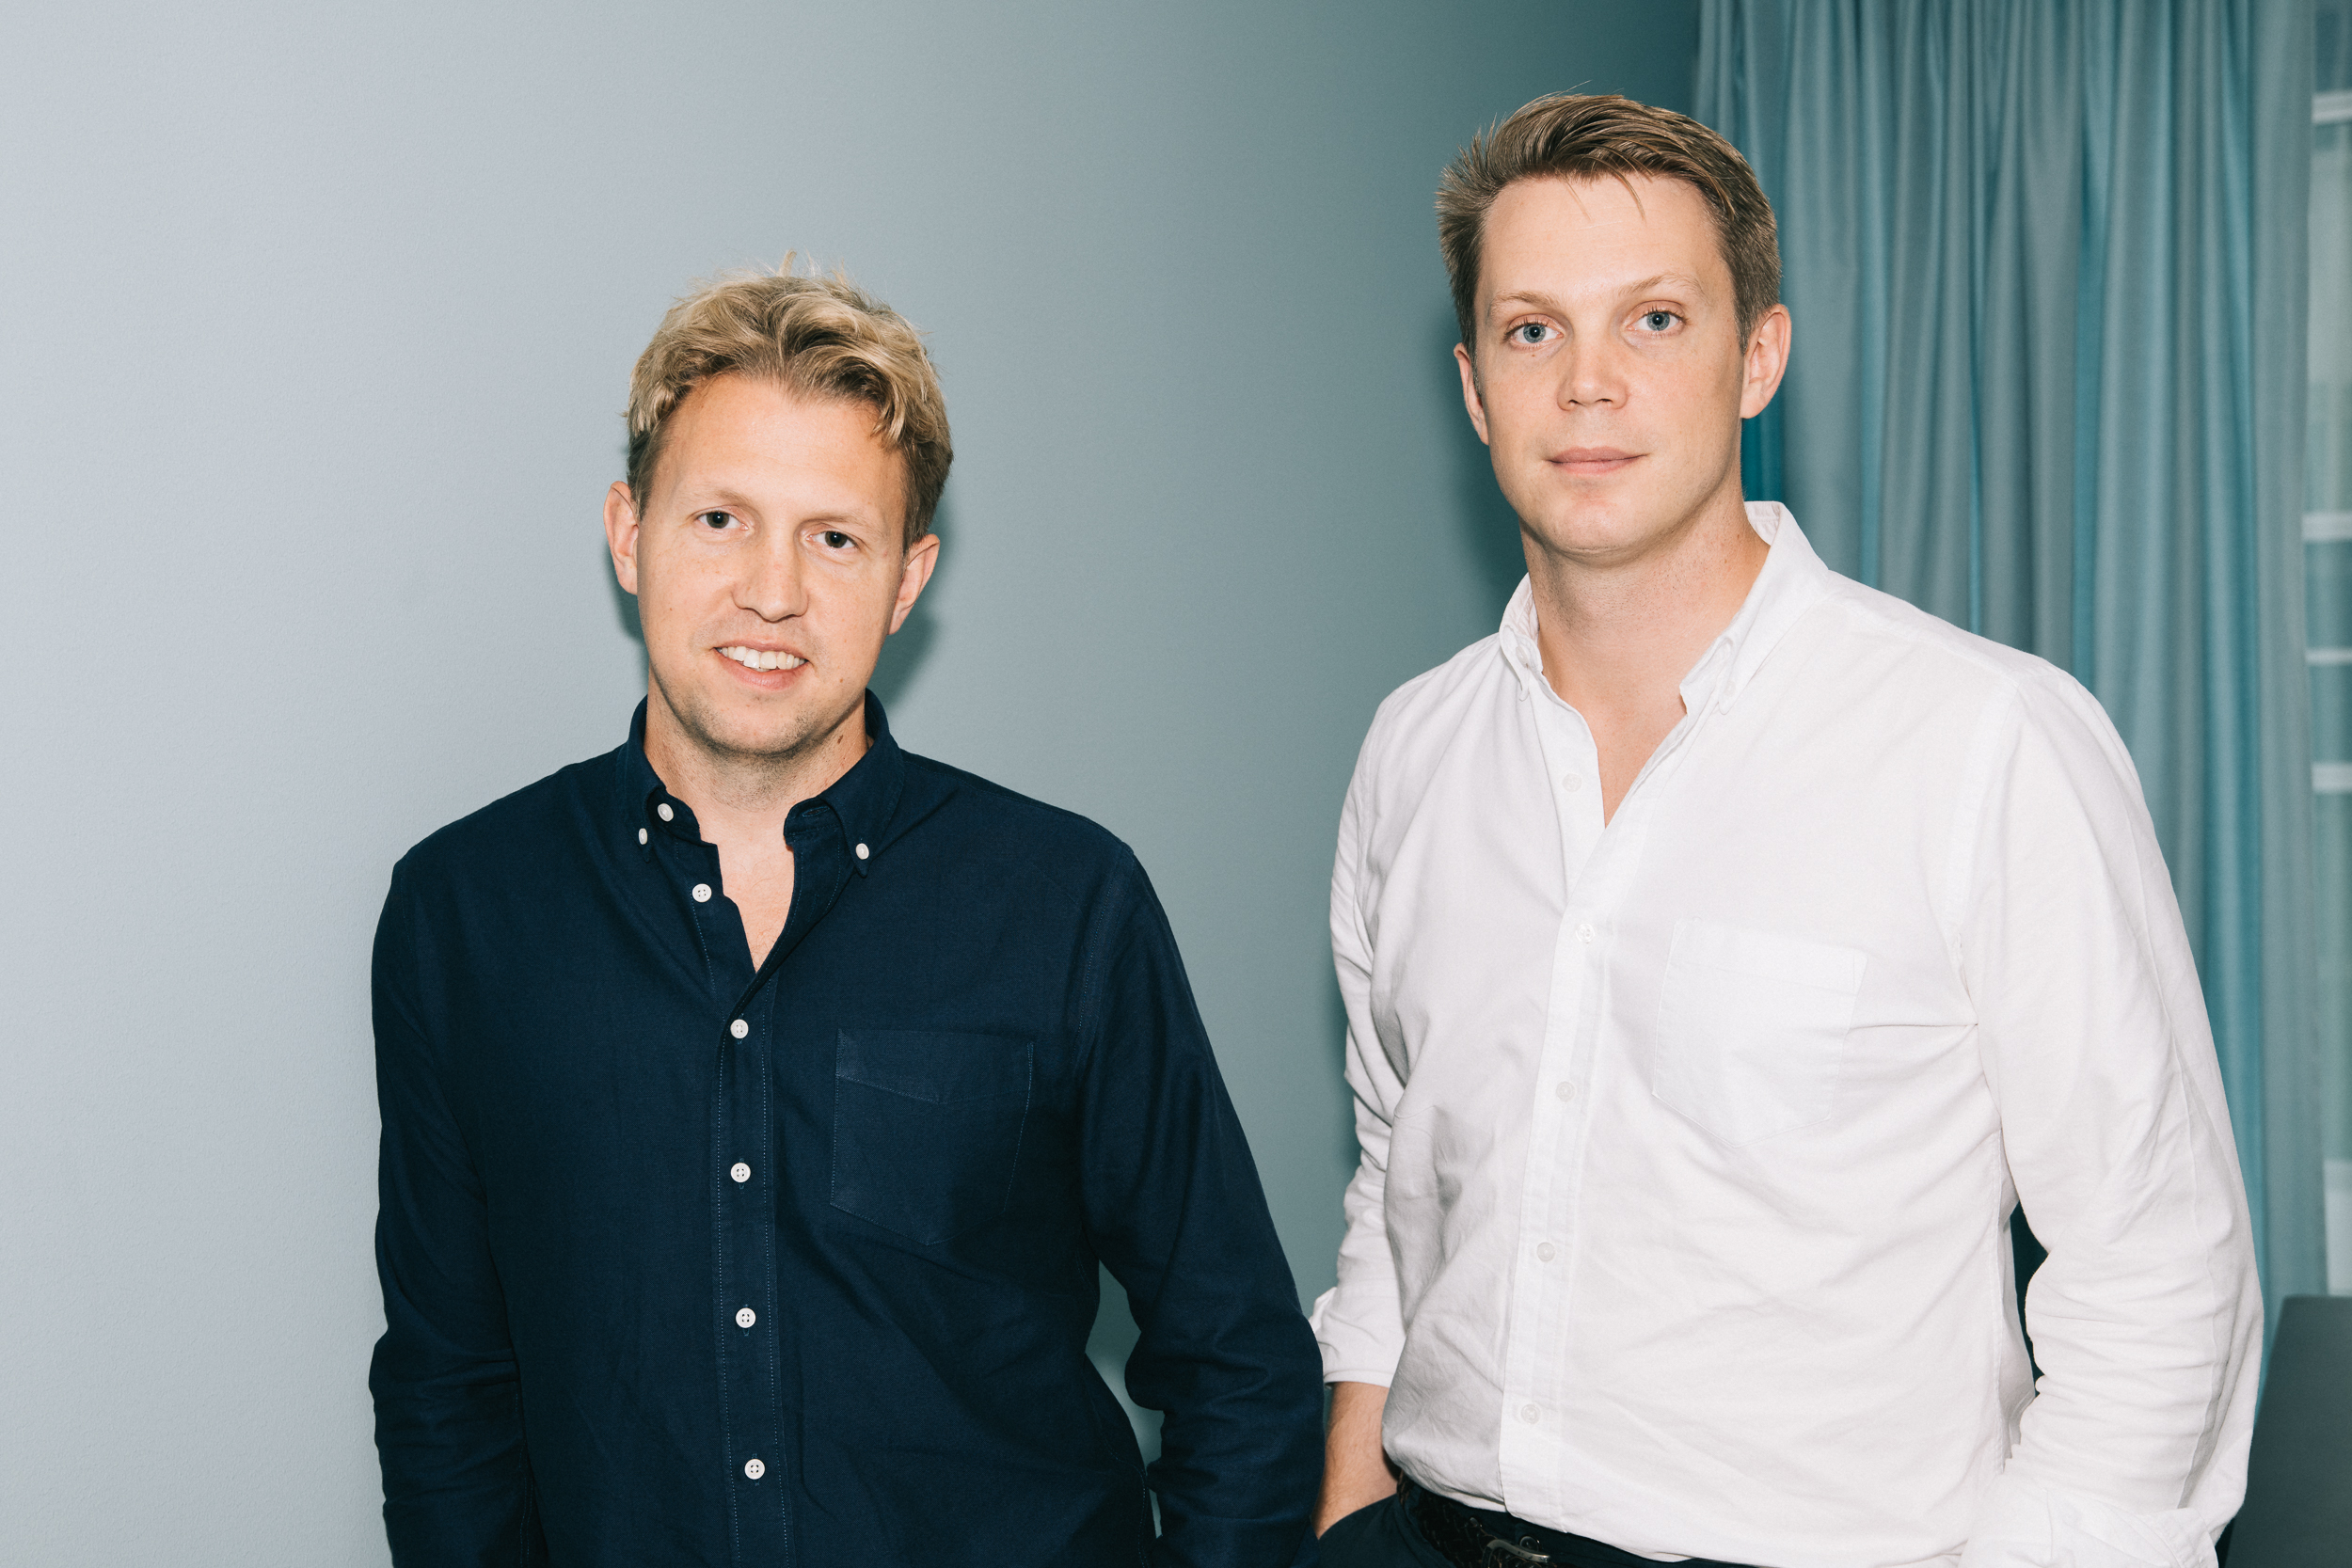 Daniel Kjellén (CEO) en Fredrik Hedberg (CTO) van Tink, een van de startups waar ABN Amro in heeft geïnvesteerd.